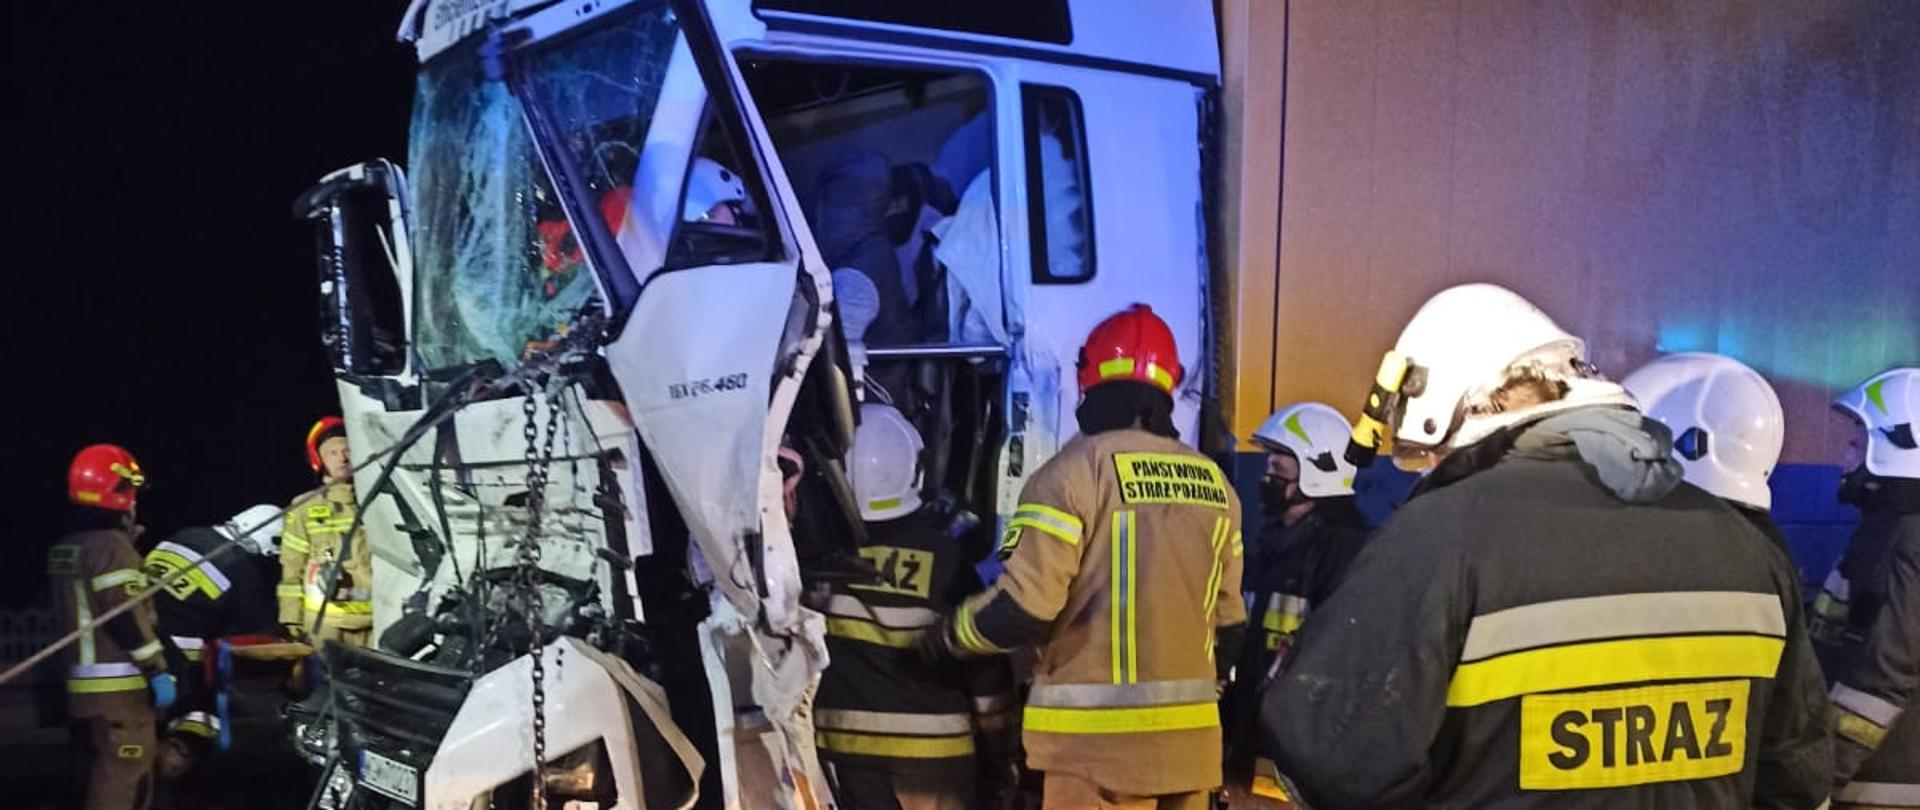 Zdjęcie przedstawia strażaków podczas działań ratowniczo-gaśniczych przy wypadku samochodów ciężarowych